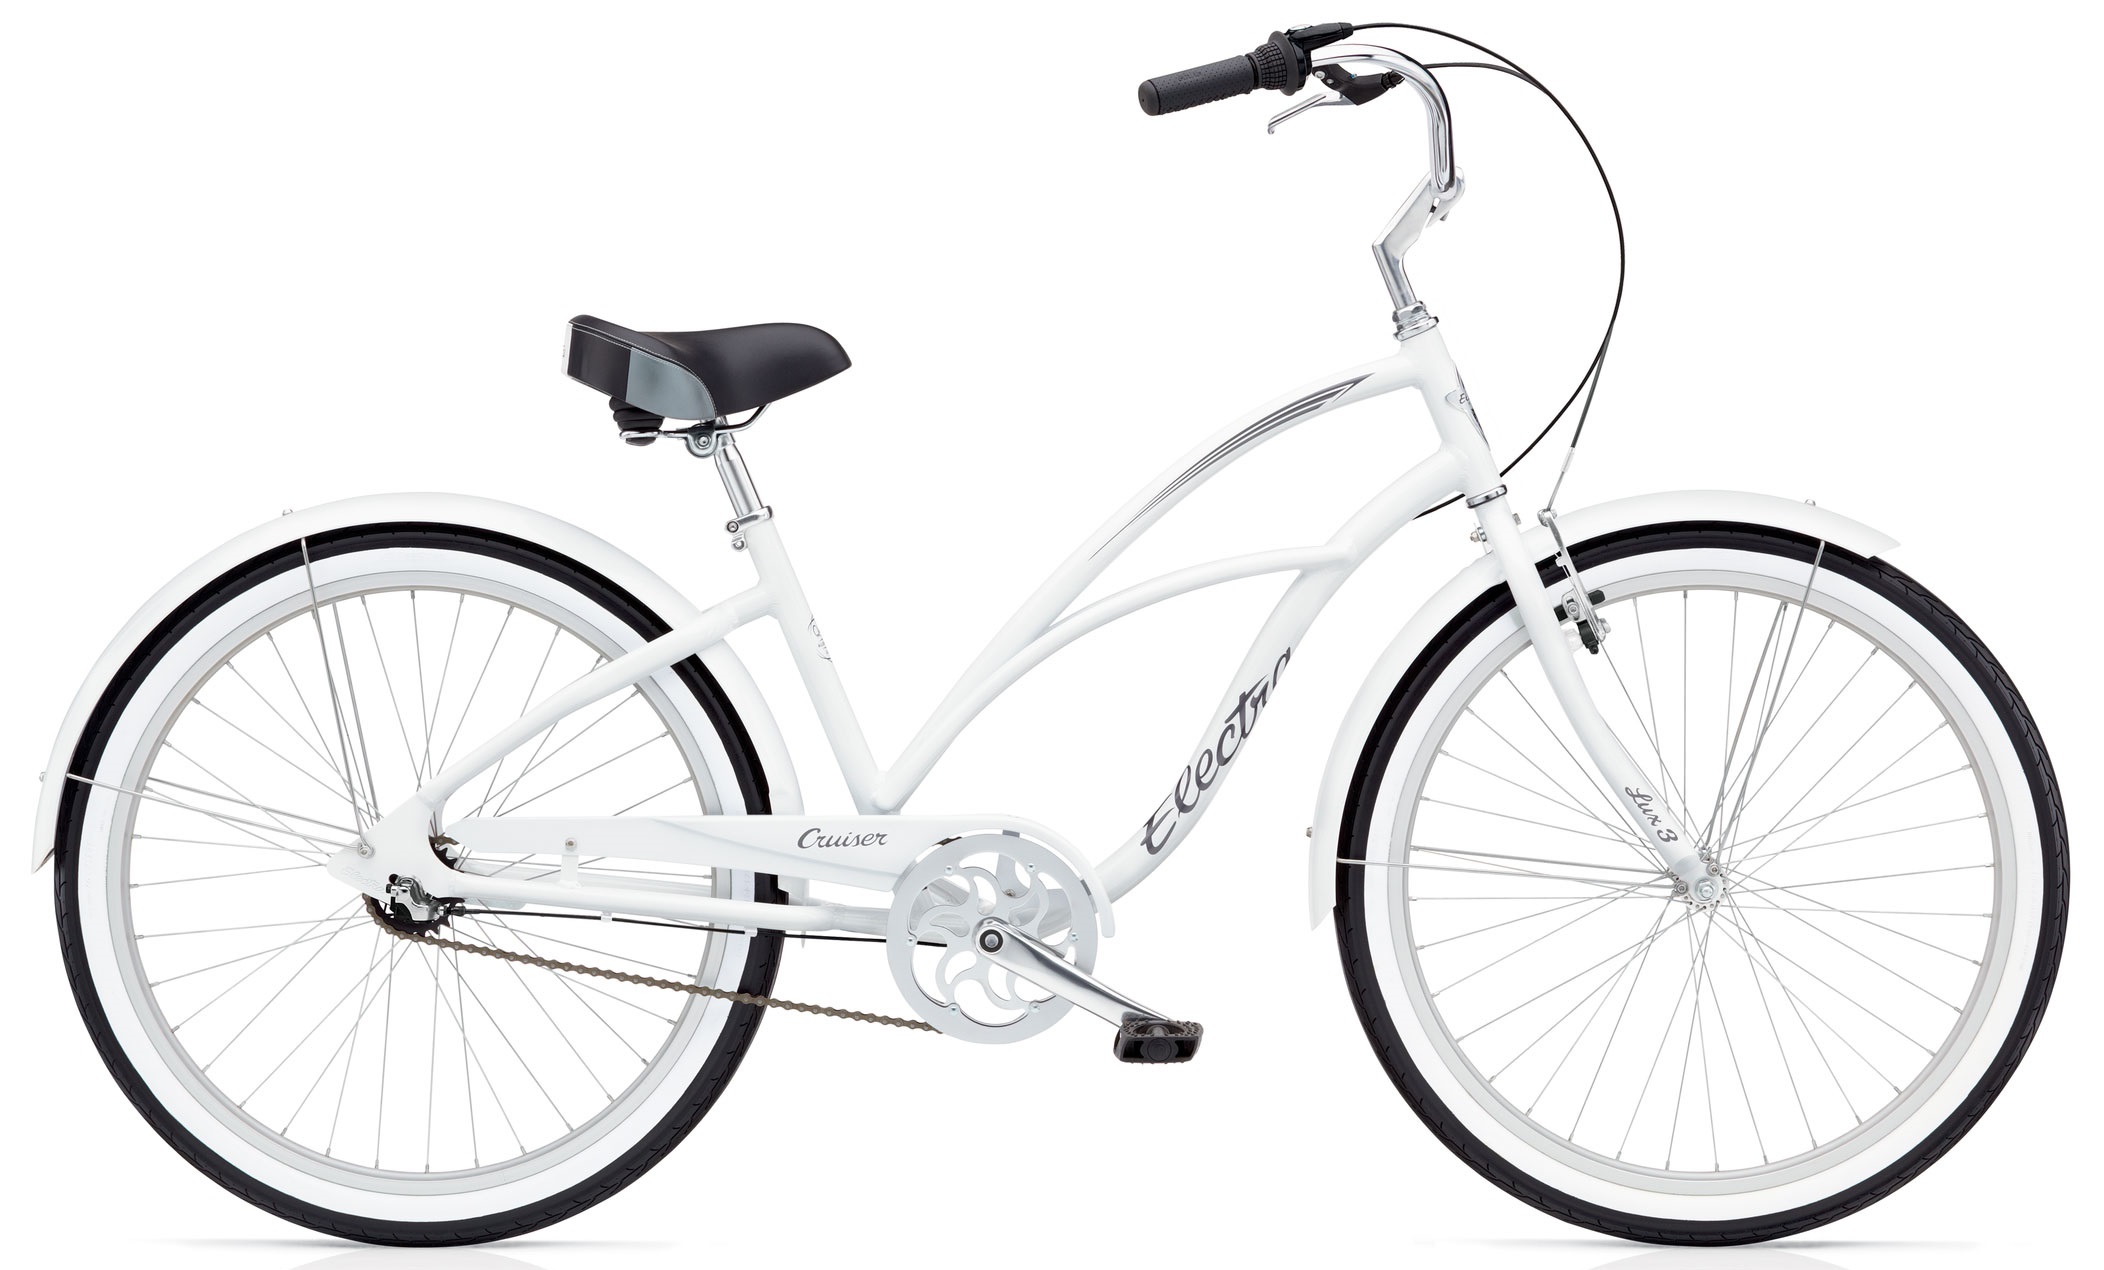  Отзывы о Подростковом велосипеде Electra Cruiser Lux 3i Ladies 24 2018